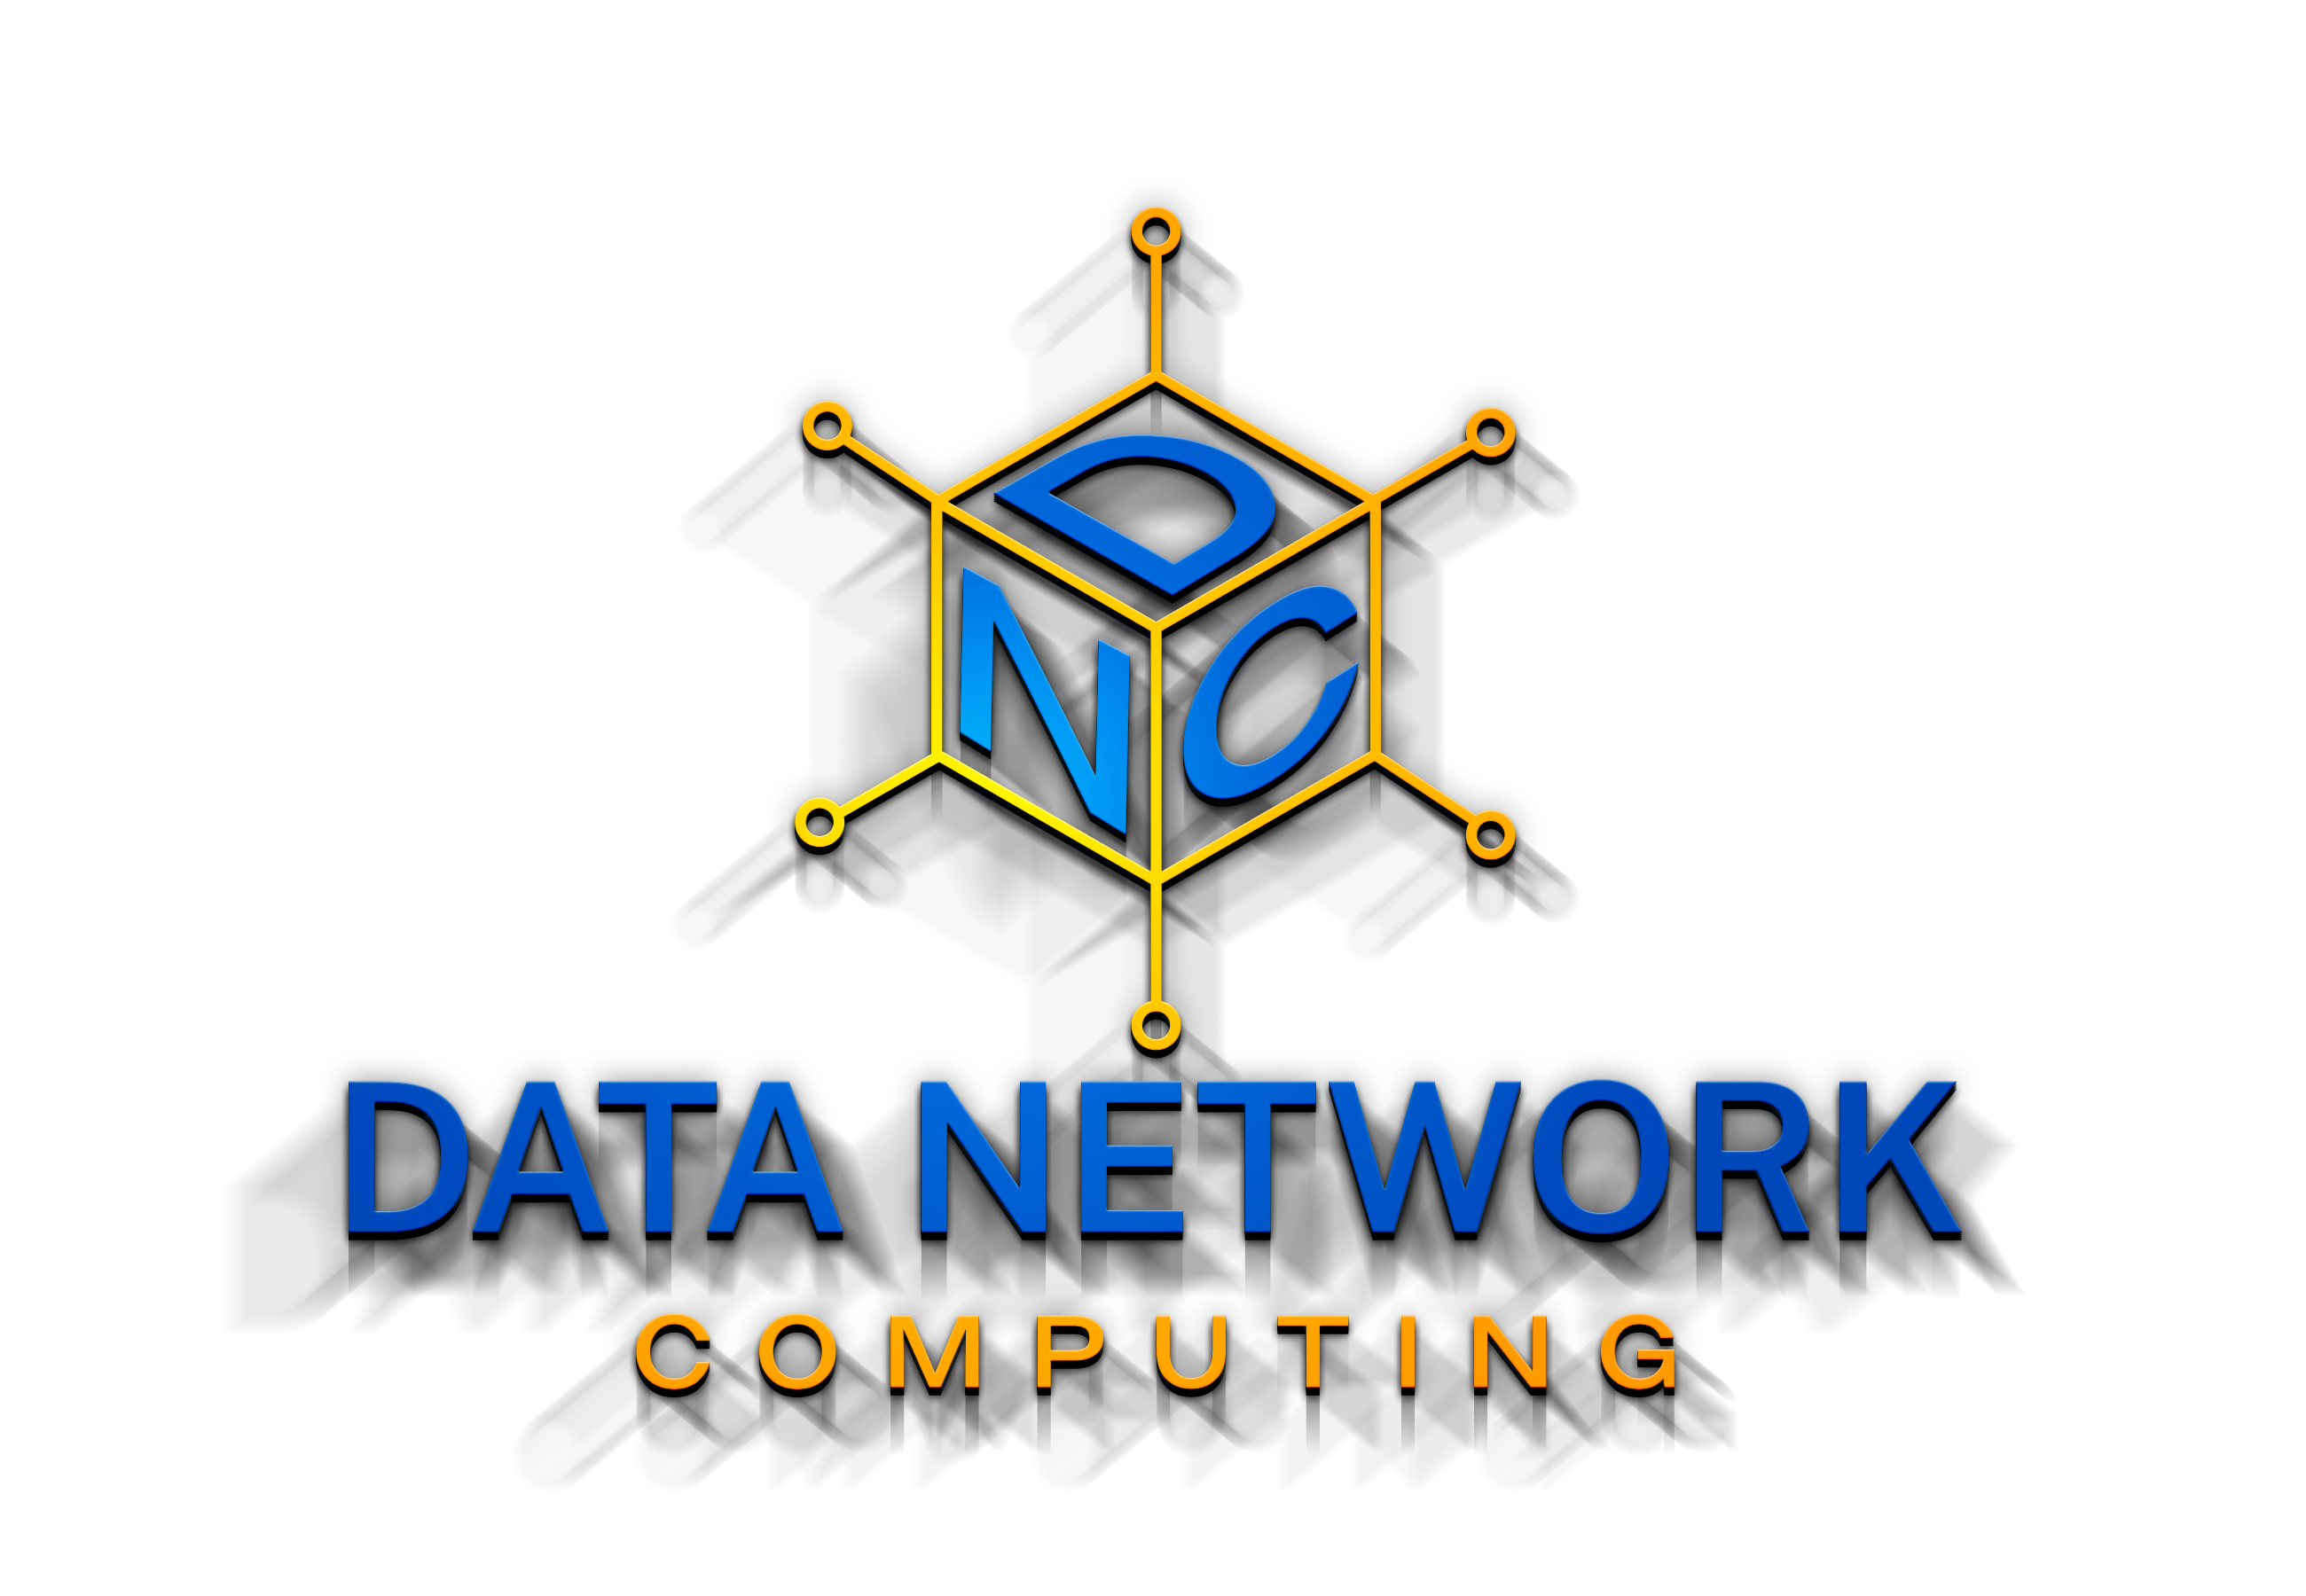 Data Network Computing